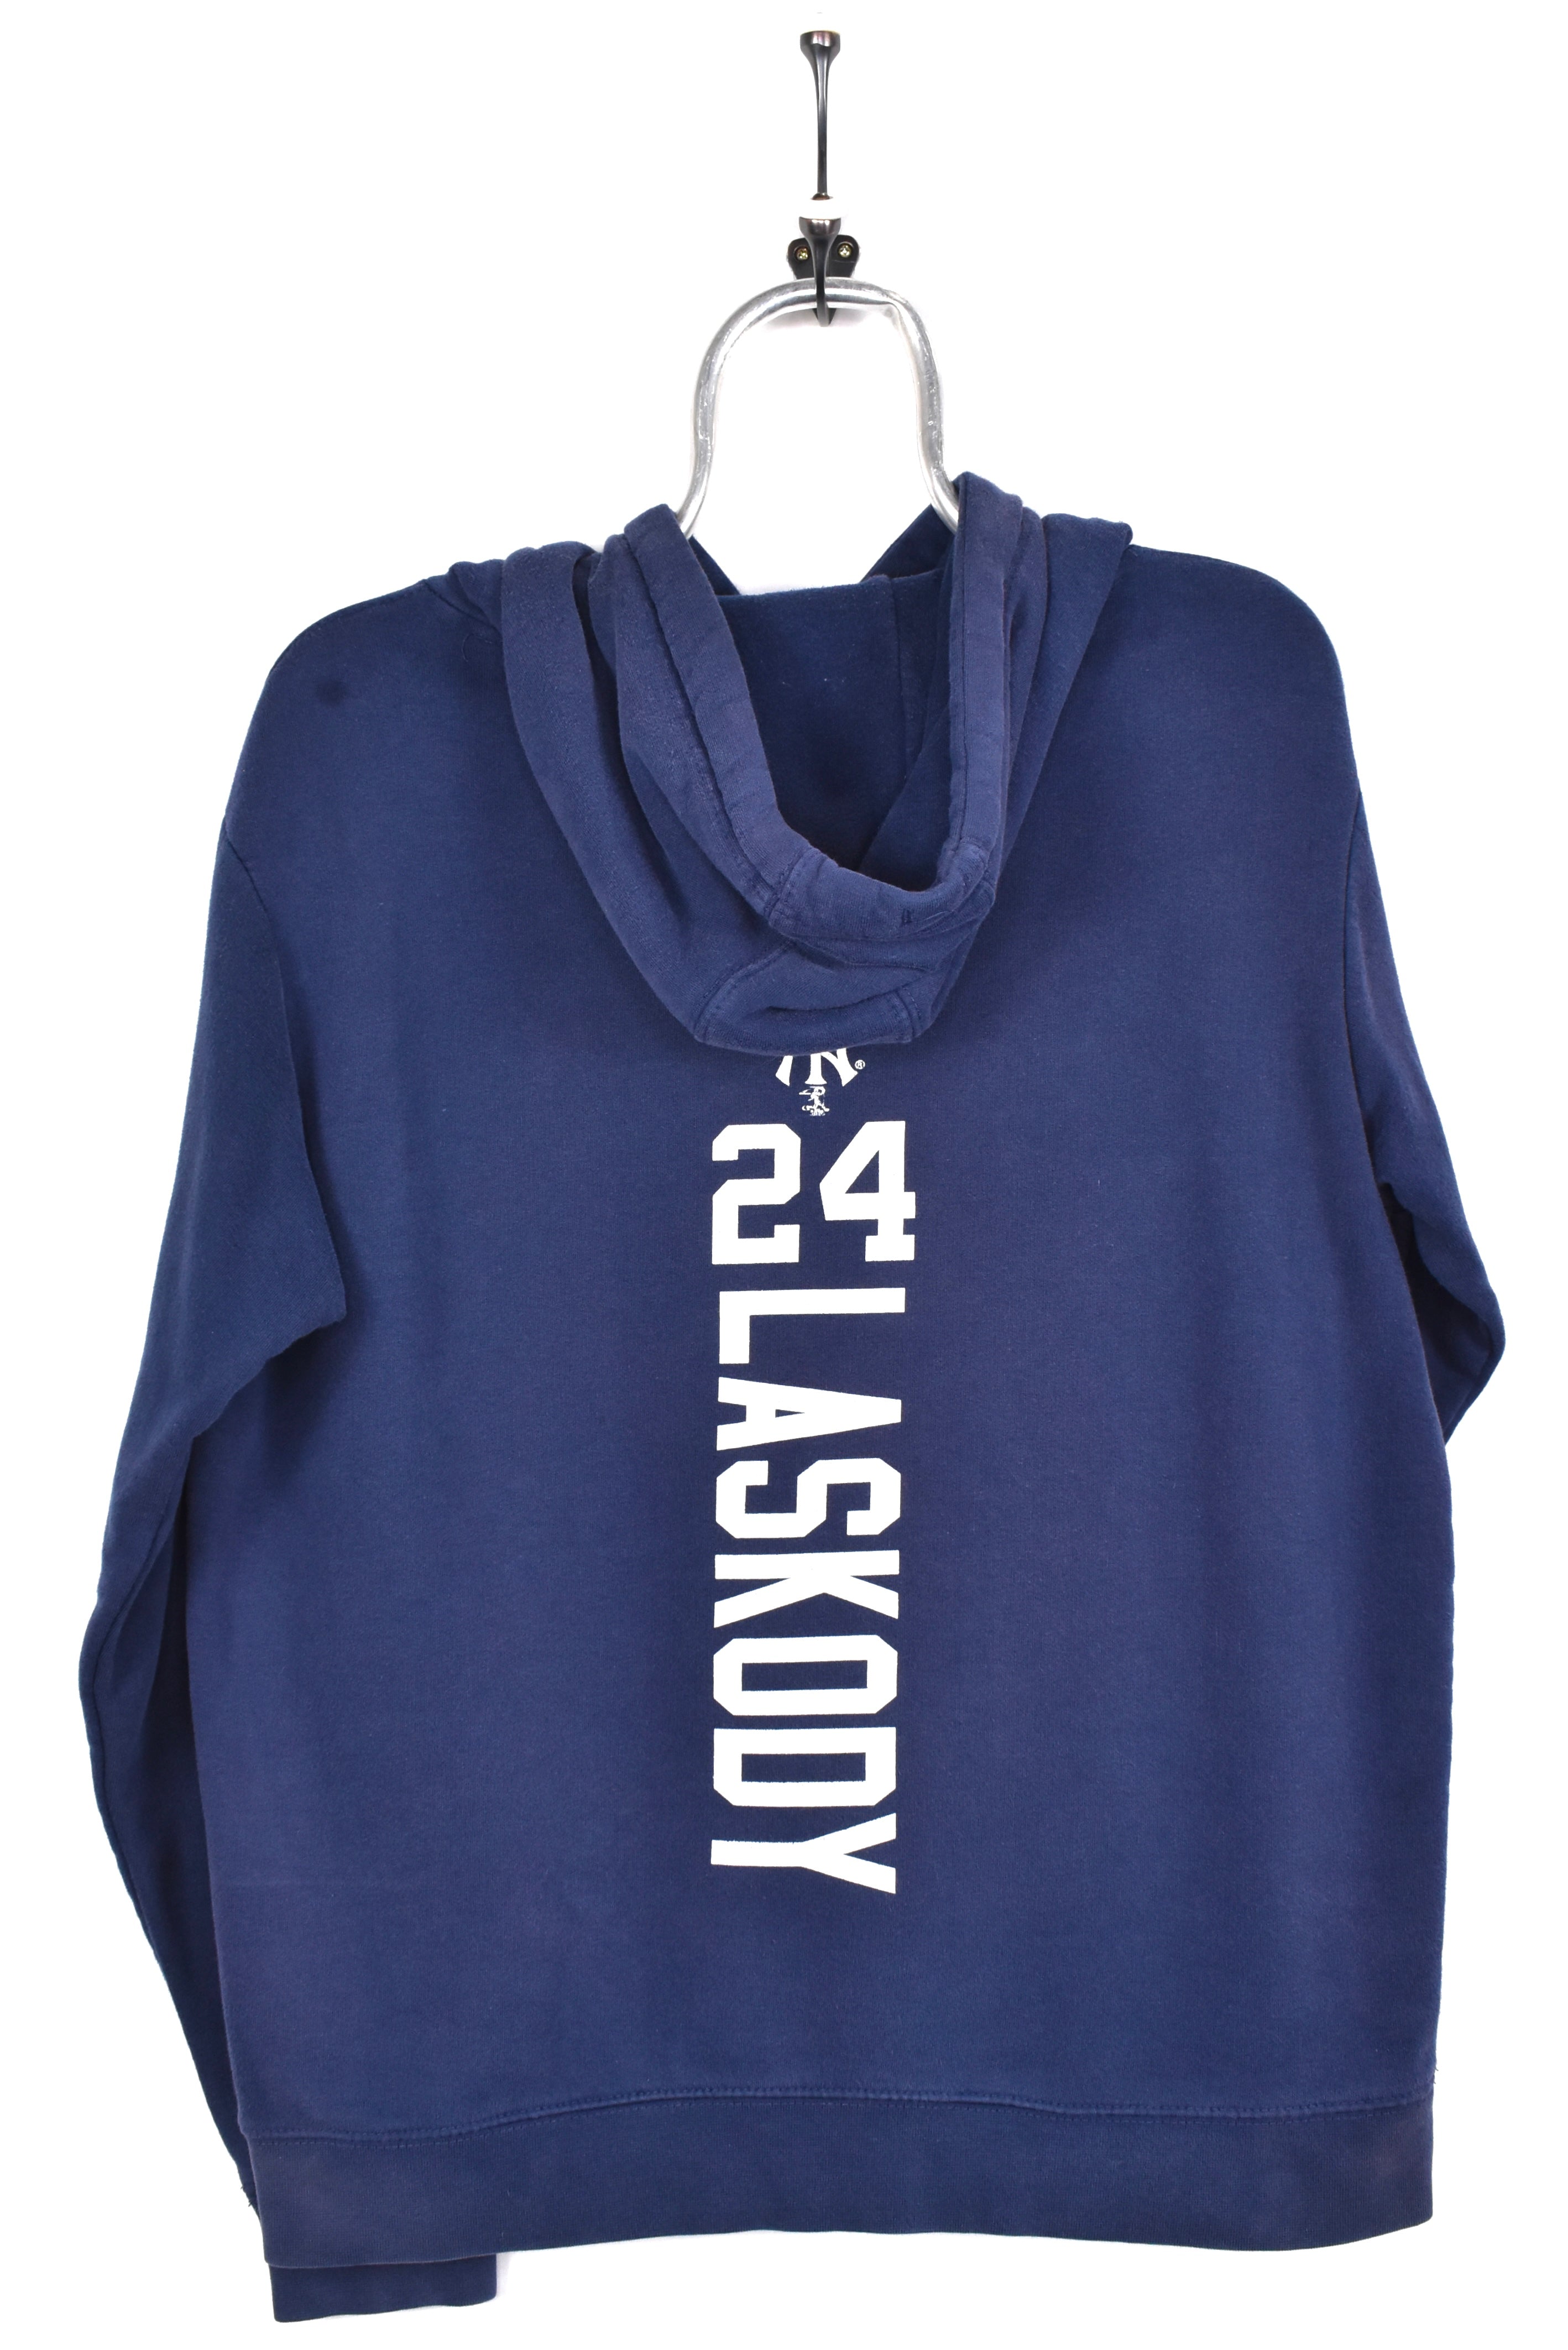 Vintage New York Yankees hoodie, MLB navy graphic sweatshirt - AU M PRO SPORT